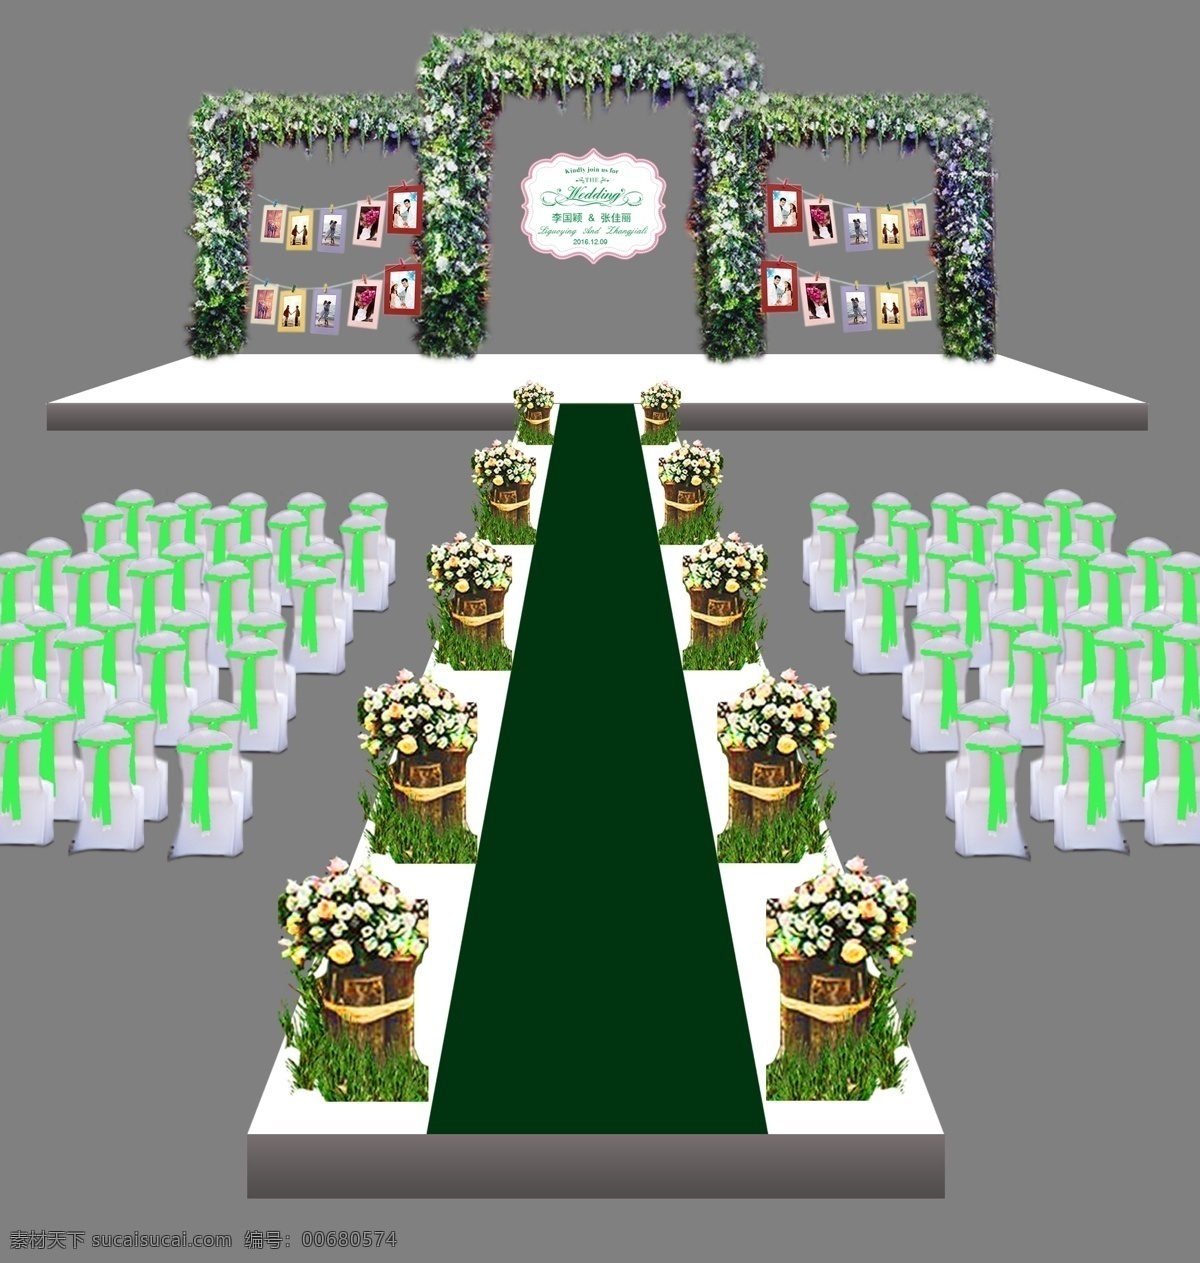 森林 系 户外 婚礼 效果图 森林系 绿色 粉色 木桩路引 绿色椅背 婚礼装饰 logo 牌